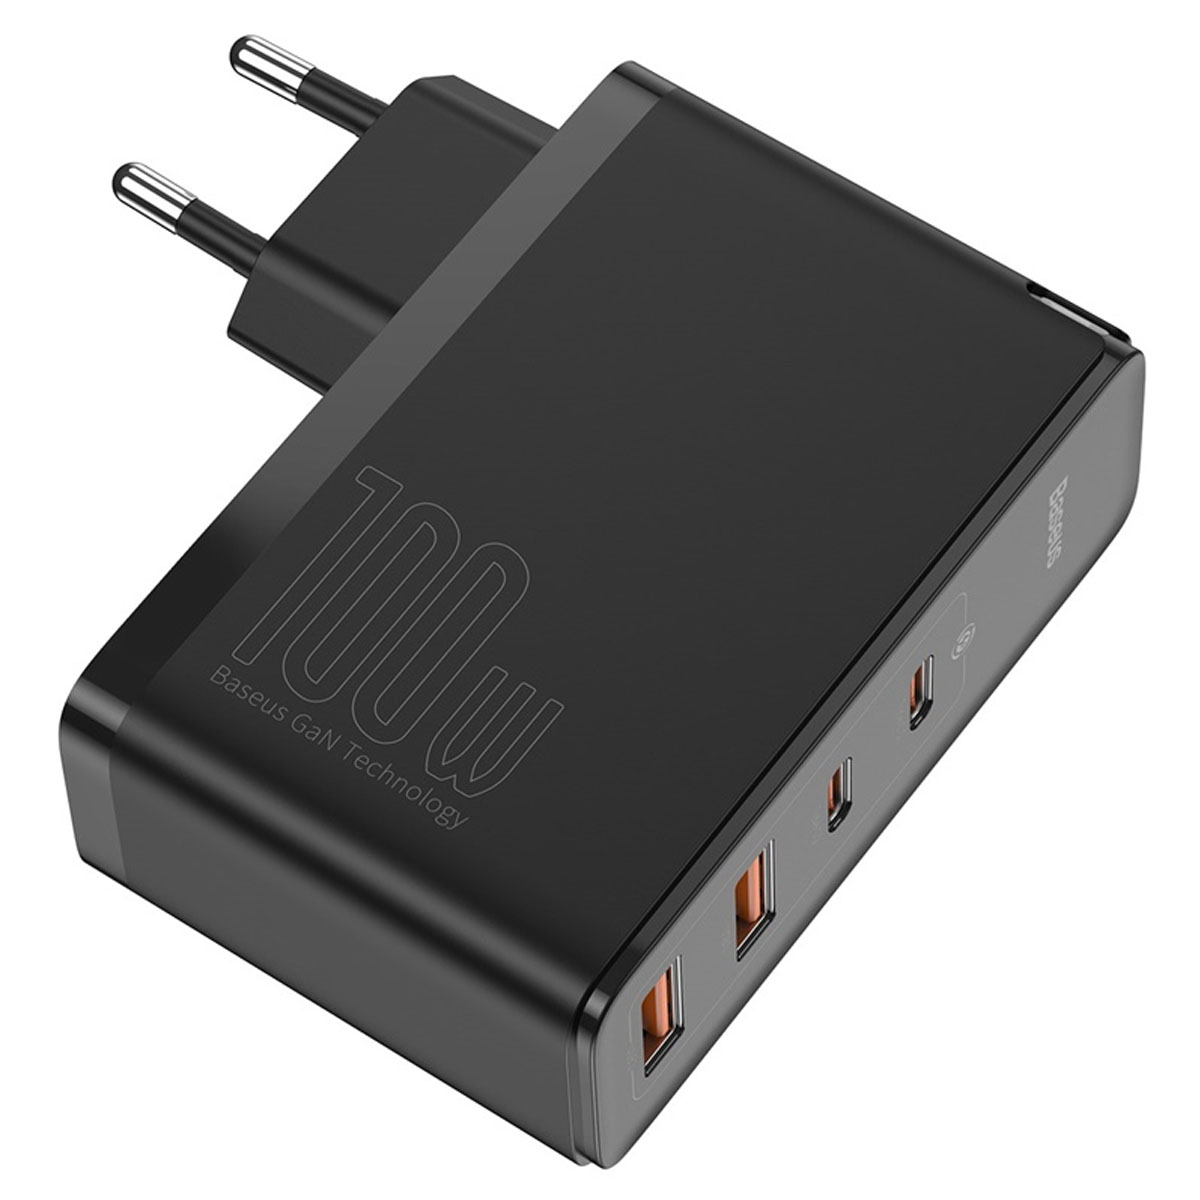 СЗУ (Сетевое зарядное устройство) BASEUS Gan2 Pro CCGAN2P-L01 с кабелем USB Type C на USB Type C, 100W, 2 USB Type C, 2 USB, QC4.0, длина 1 метр, цвет черный